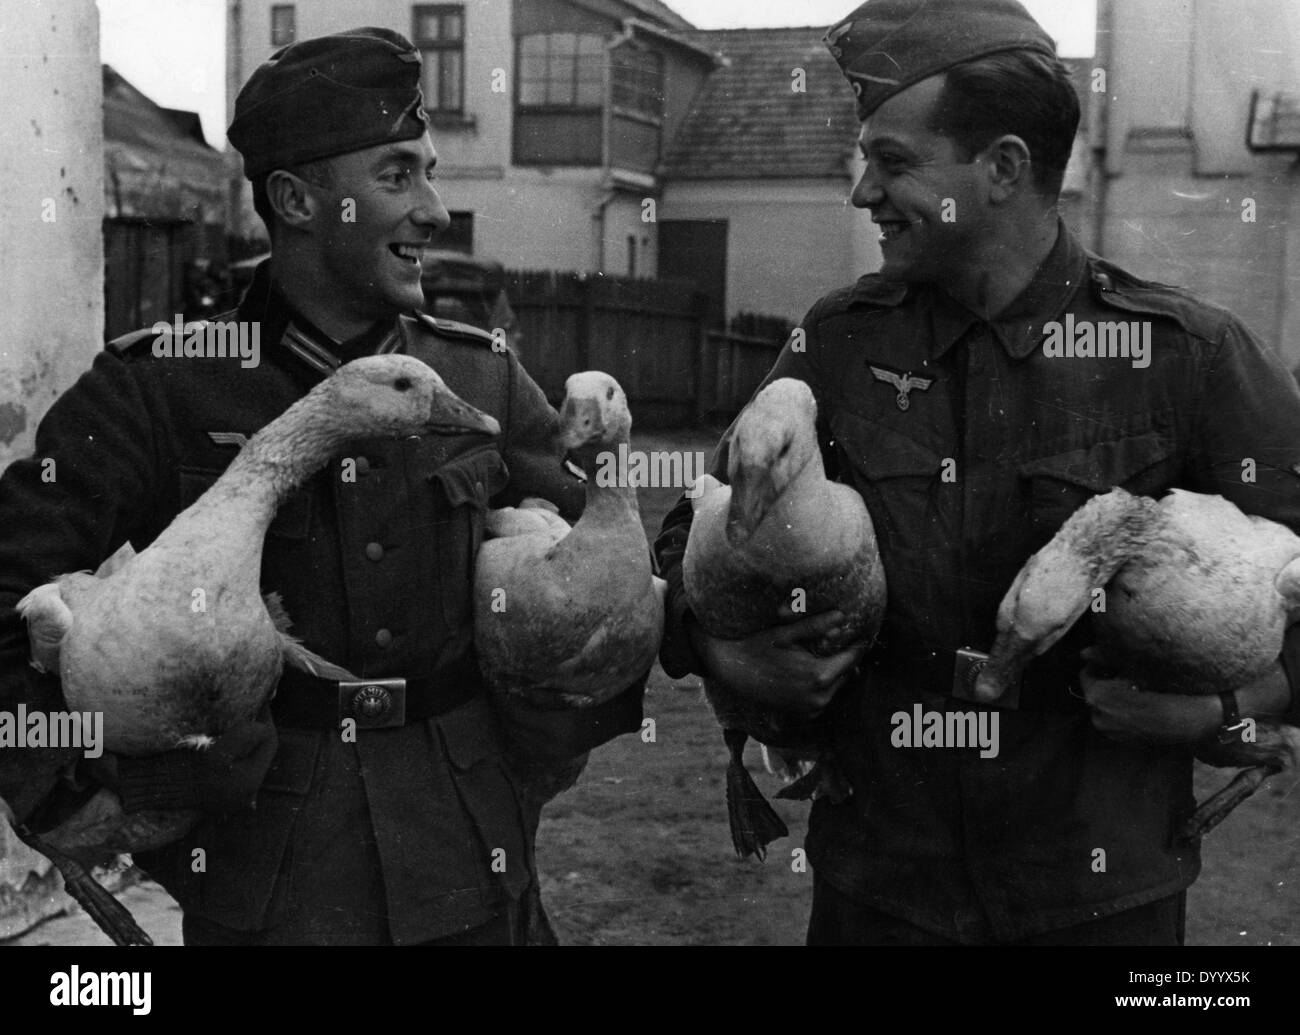 Inizio dell'attacco su 01.09.1939, i soldati tedeschi con oche quisitioned,1939 Foto Stock